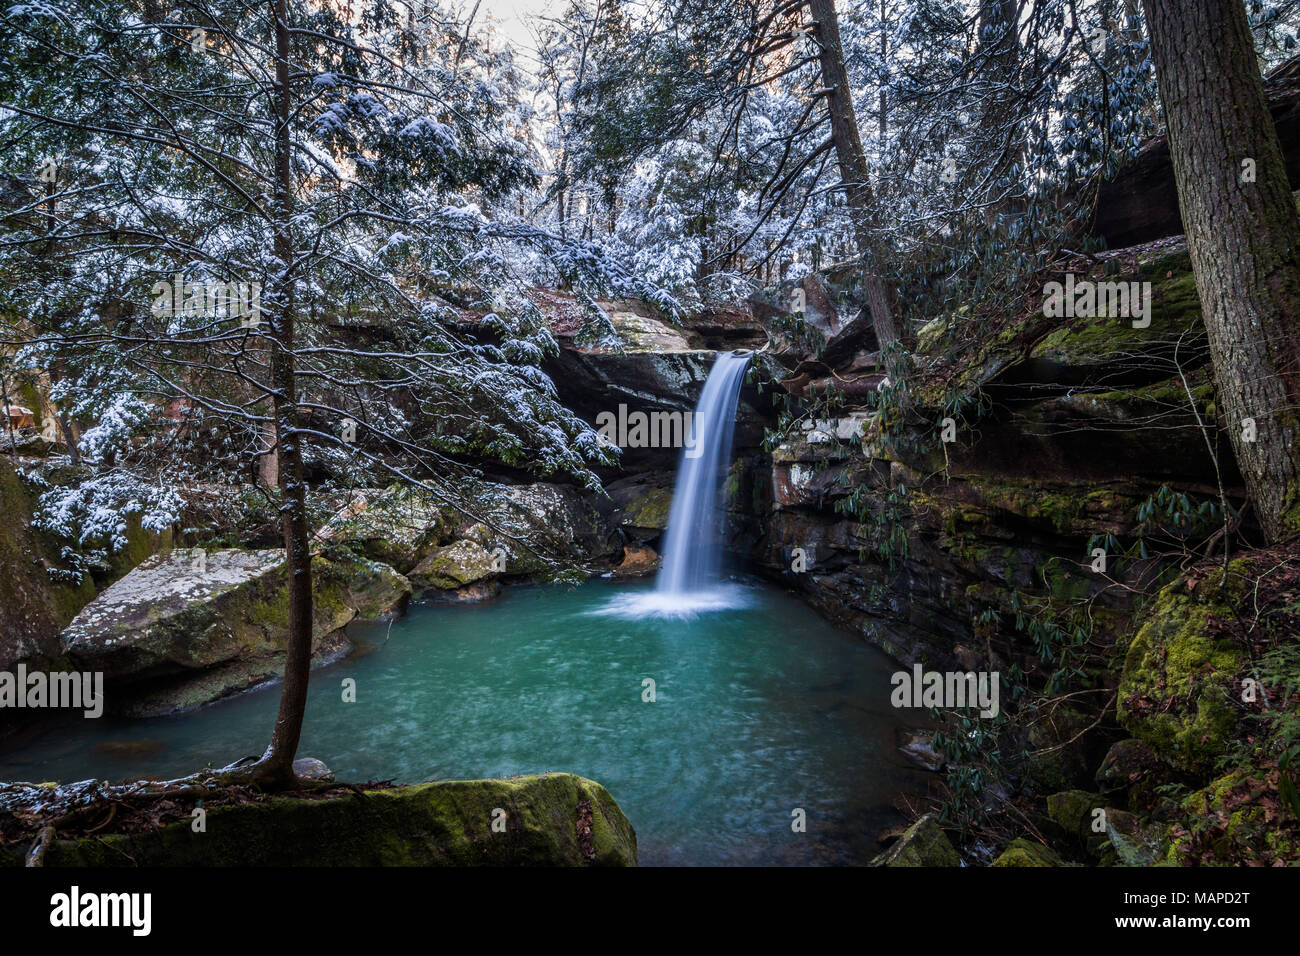 Wasser fließt von einem Wasserfall in diesem Winter Szene in einem Laubwald. Stockfoto